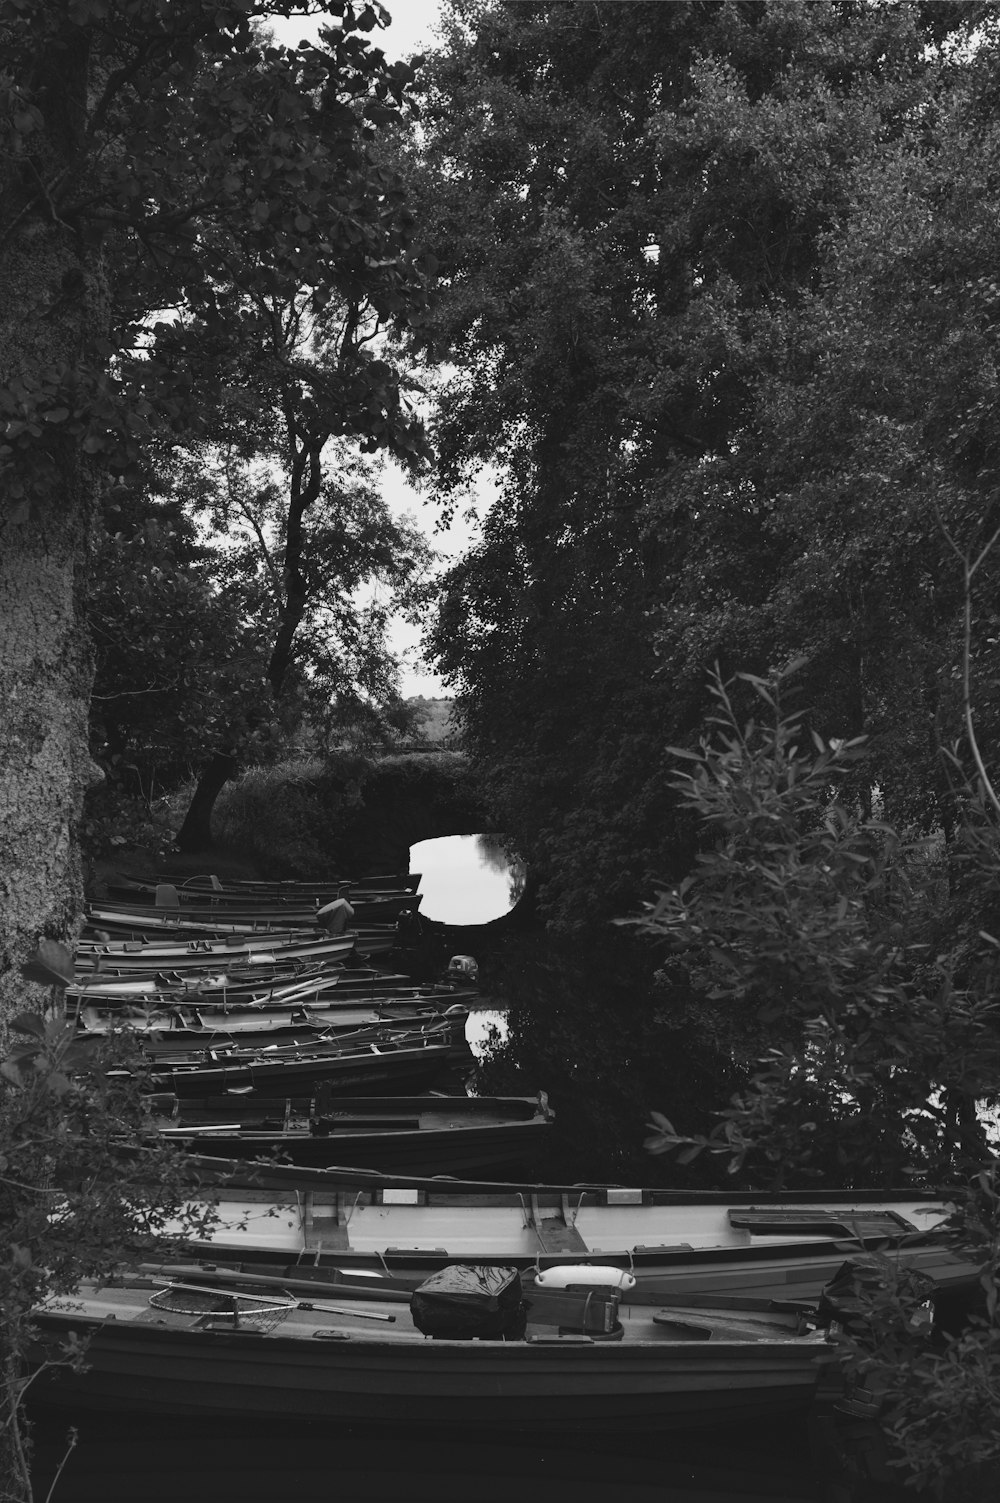 Una foto in bianco e nero di una fila di barche